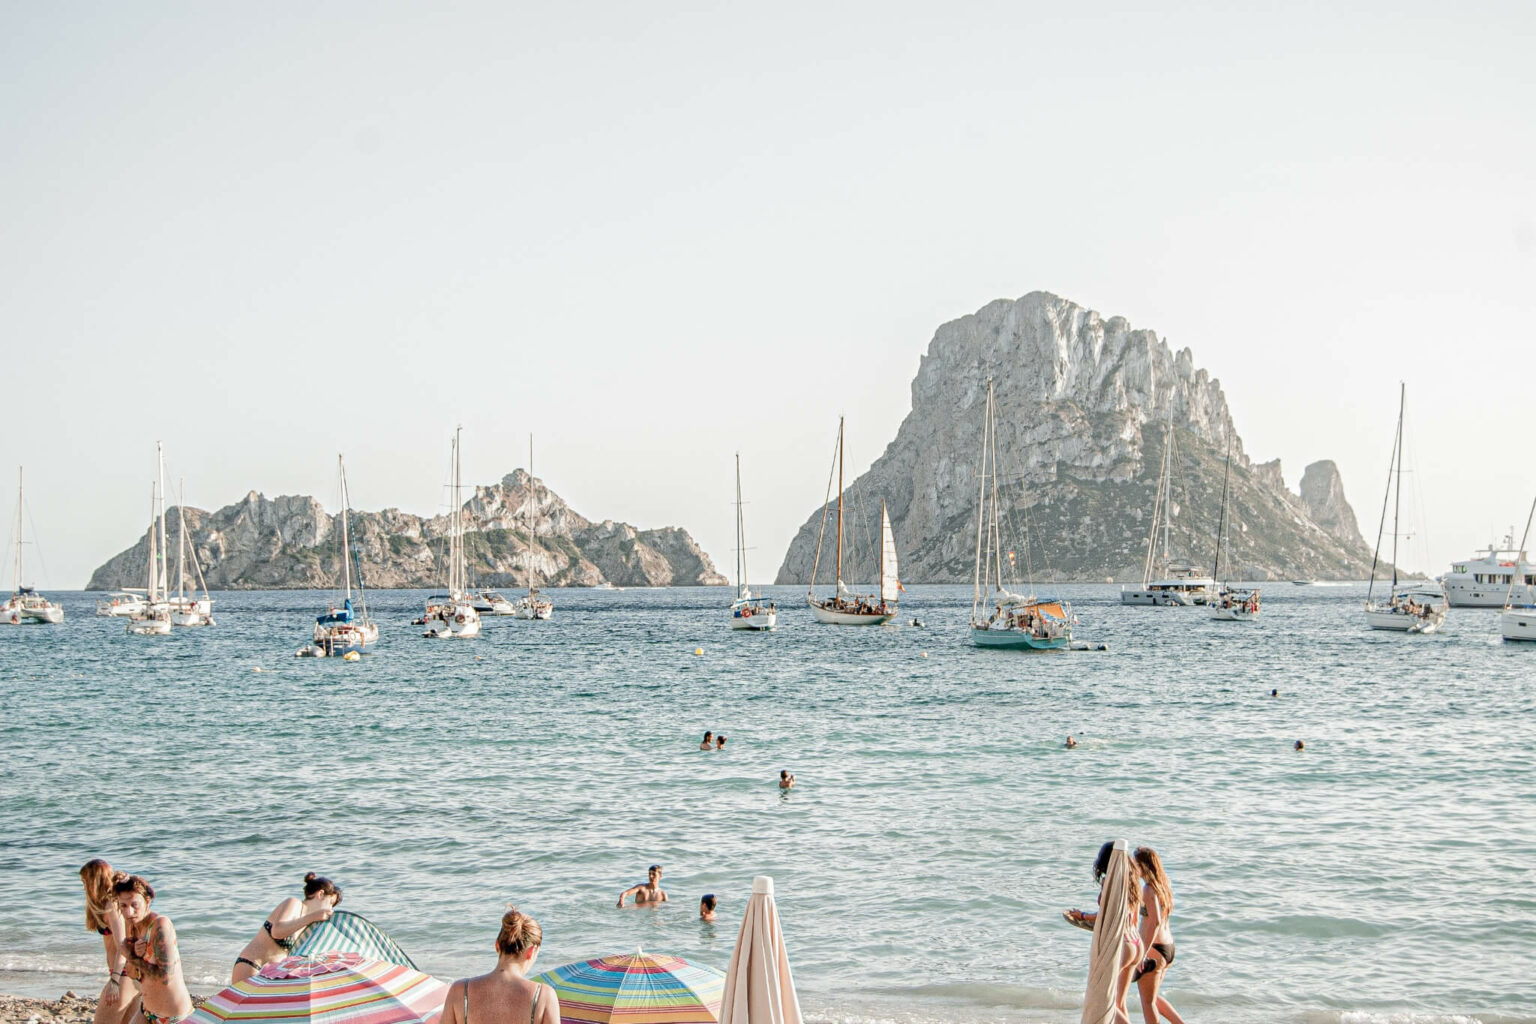 Zeven handige dingen die je moet weten over je trip naar Ibiza